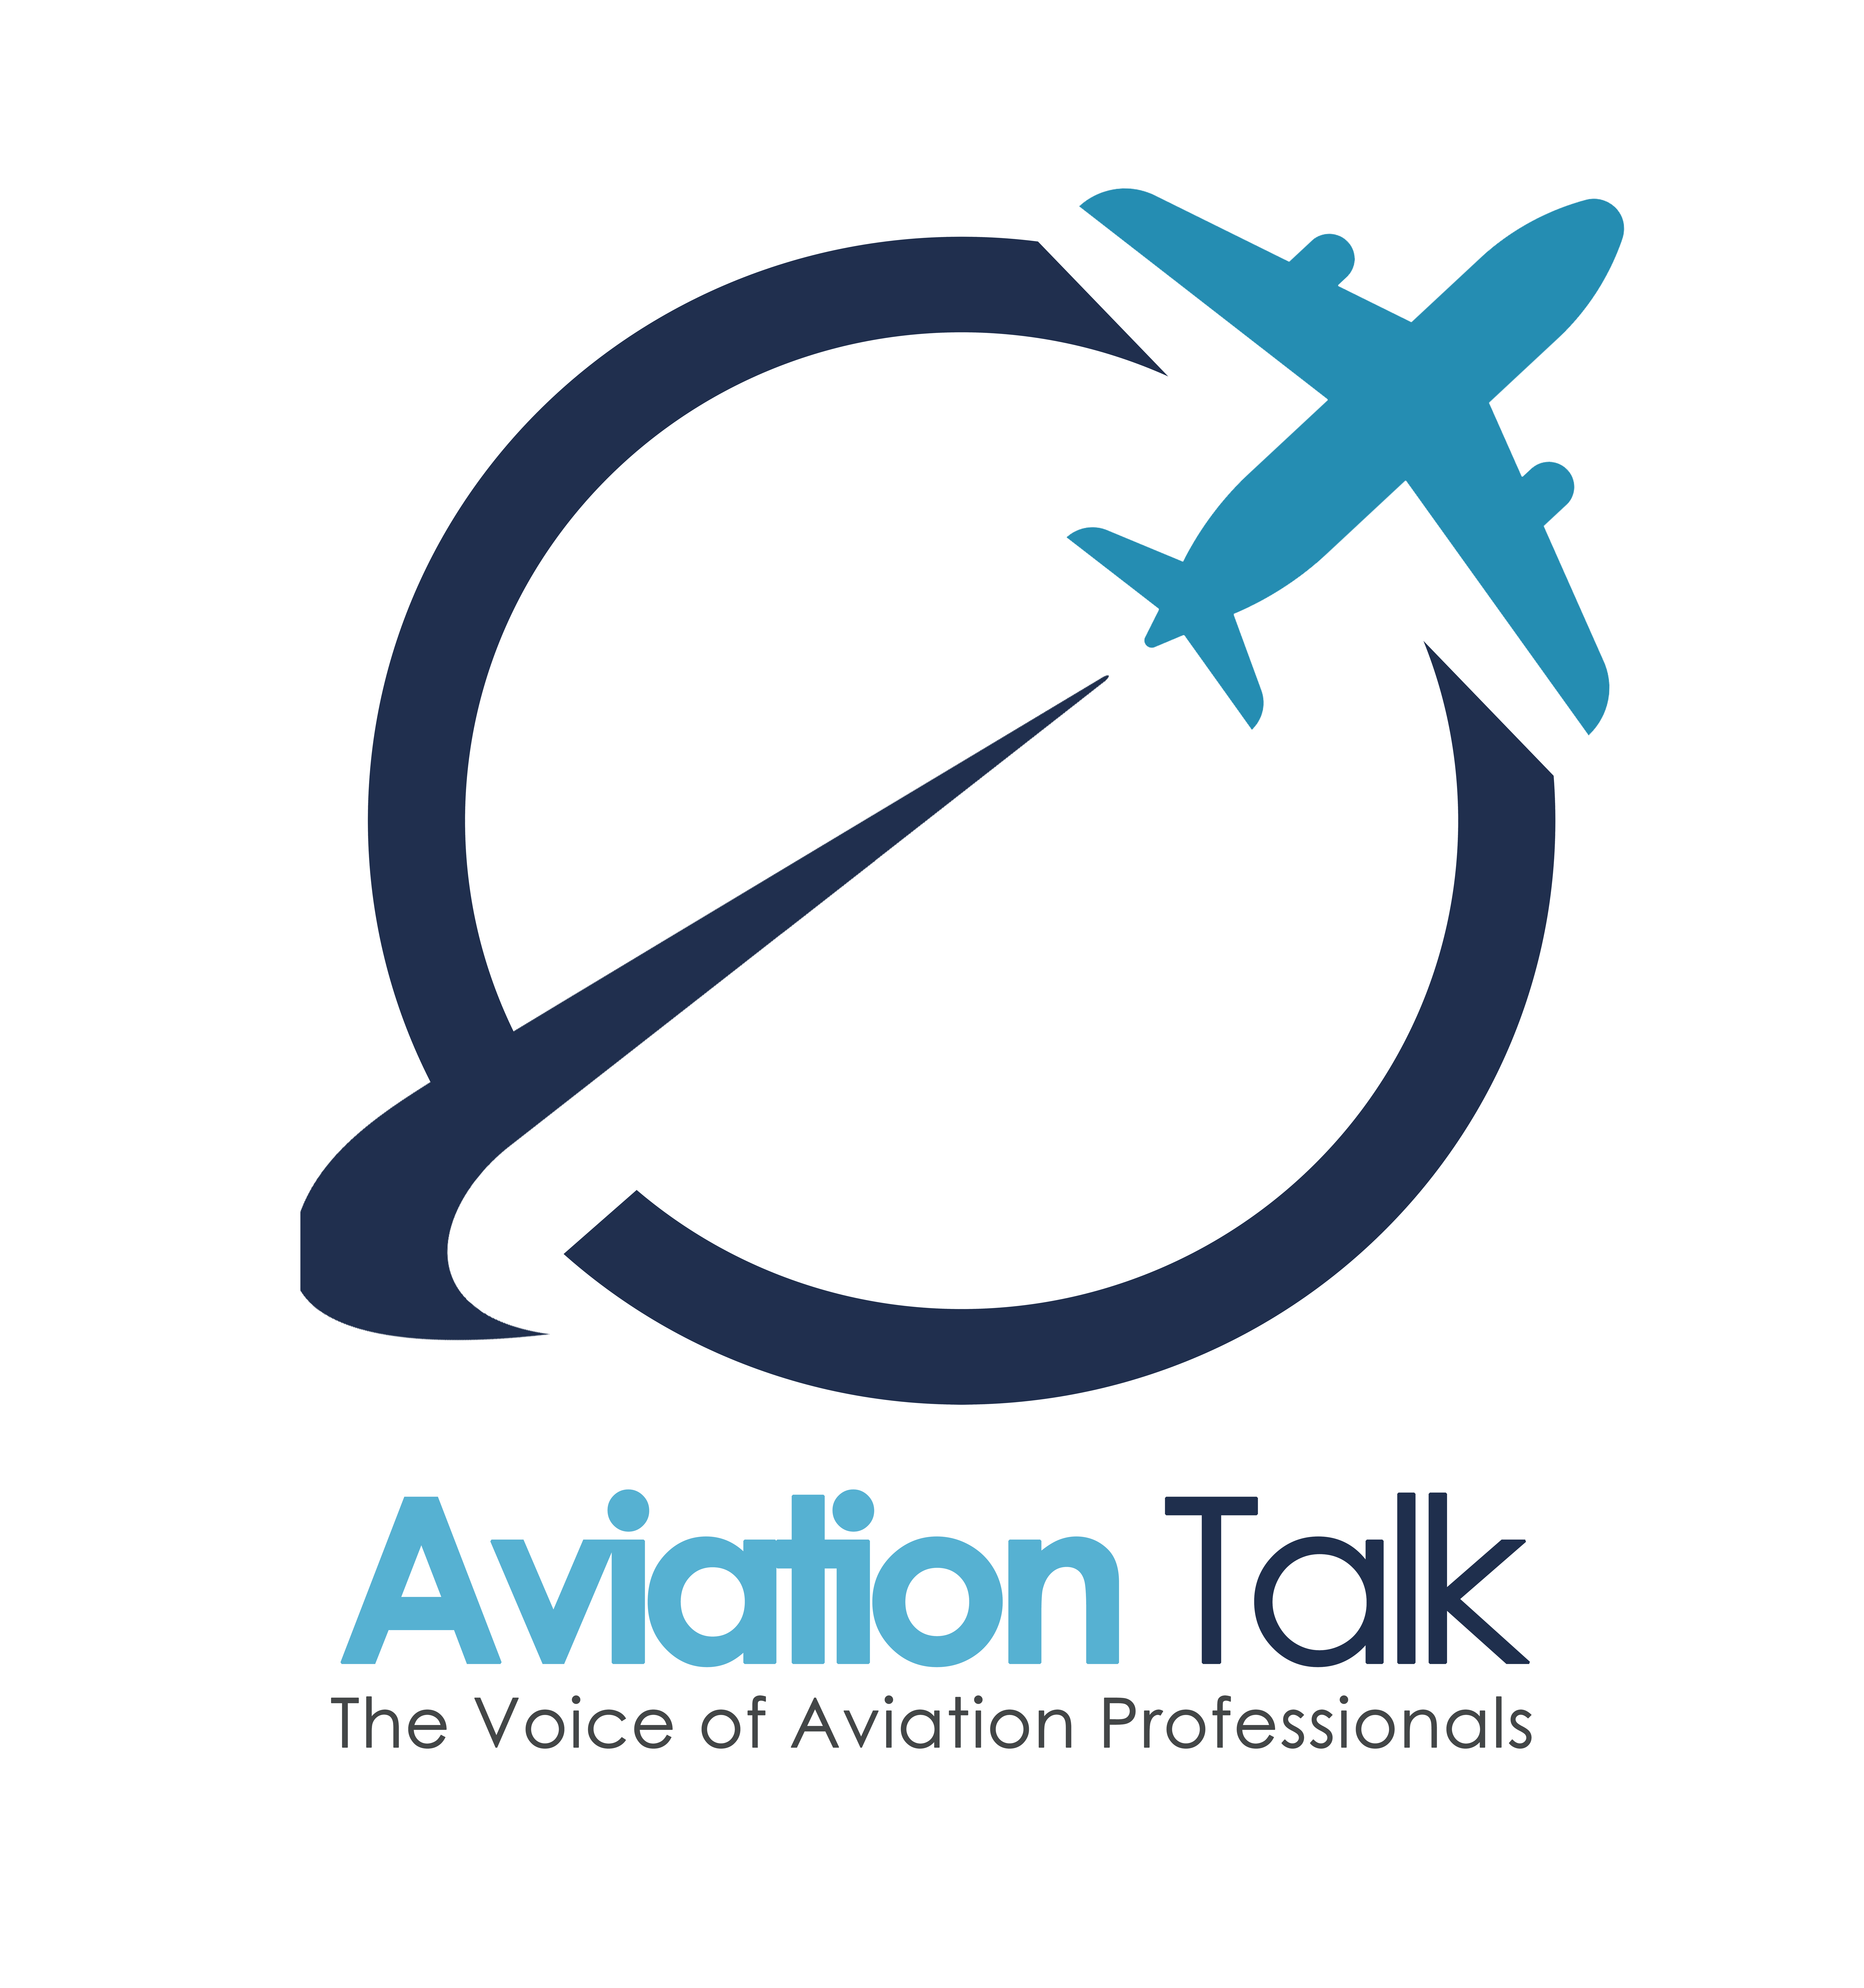 effa aviation talk master logo full